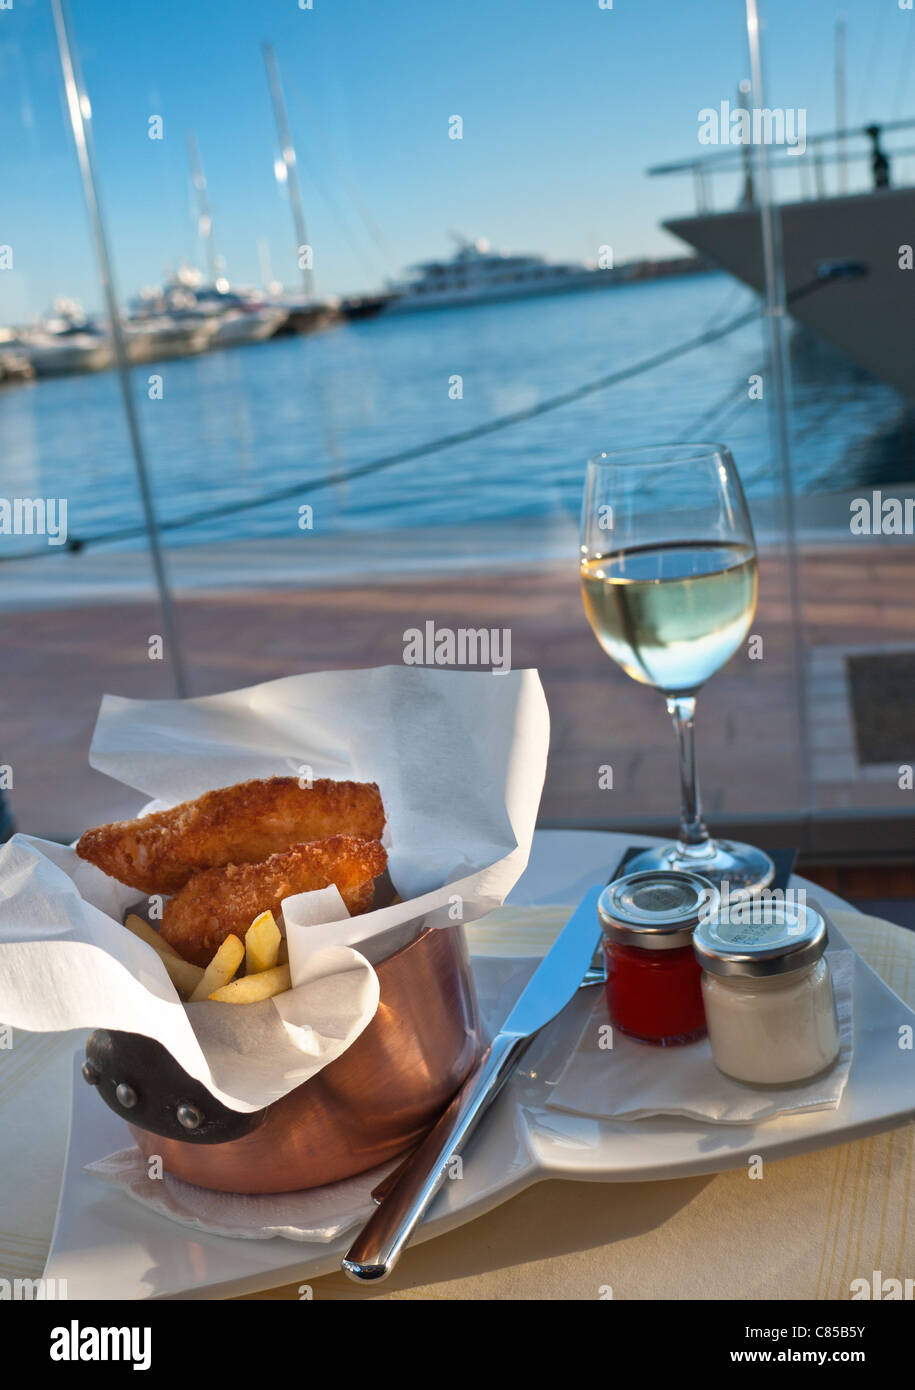 PUERTO PORTALS TAPAS de luxe Fish & chips repas servi au bord de l'eau marina restaurant avec vue sur la marina et les yachts en arrière-plan Palma de Majorque Espagne Banque D'Images